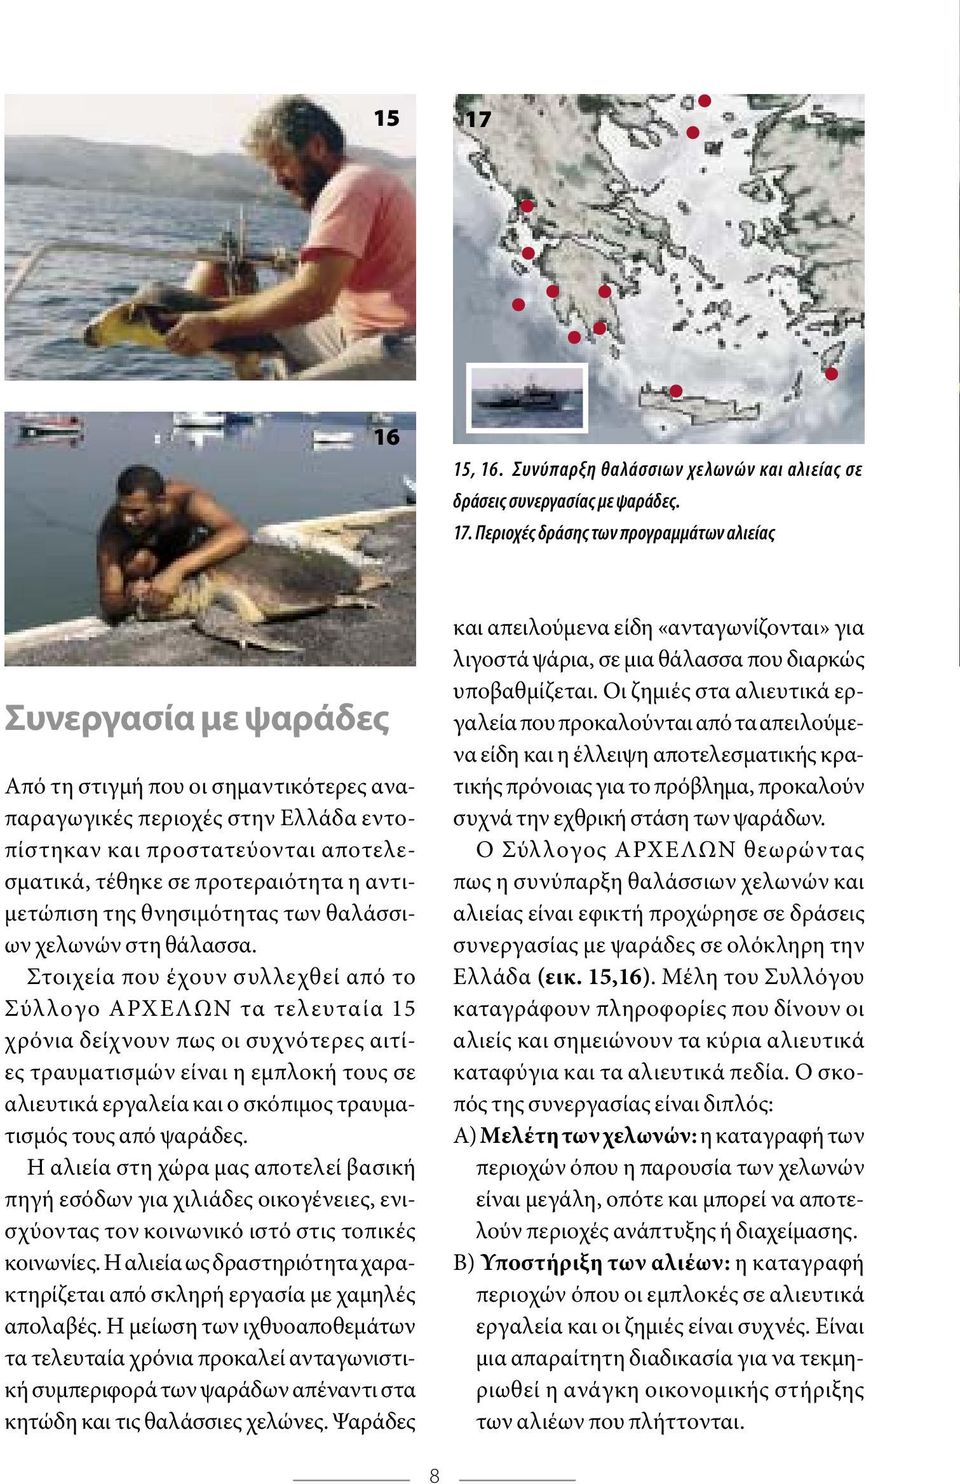 Περιοχές δράσης των προγραµµάτων αλιείας Συνεργασία µε ψαράδες Από τη στιγµή που οι σηµαντικότερες αναπαραγωγικές περιοχές στην Ελλάδα εντοπίστηκαν και προστατεύονται αποτελεσµατικά, τέθηκε σε